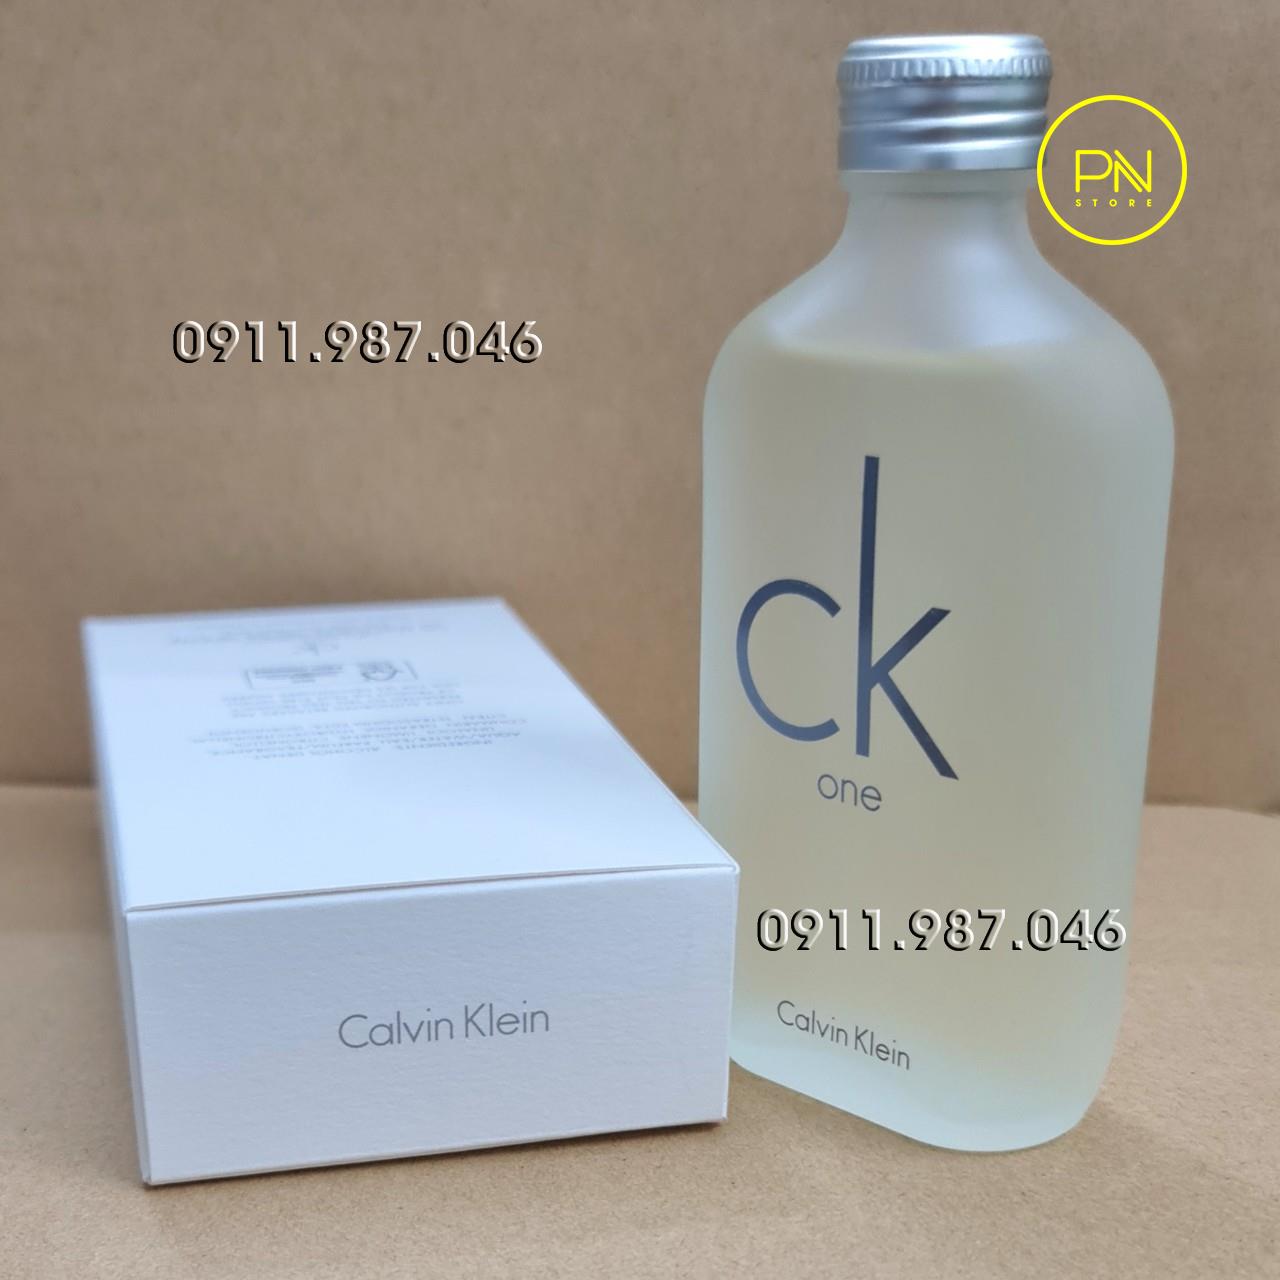 Nước hoa CK One EDT 100ml chính hãng (Mỹ) - PN84568